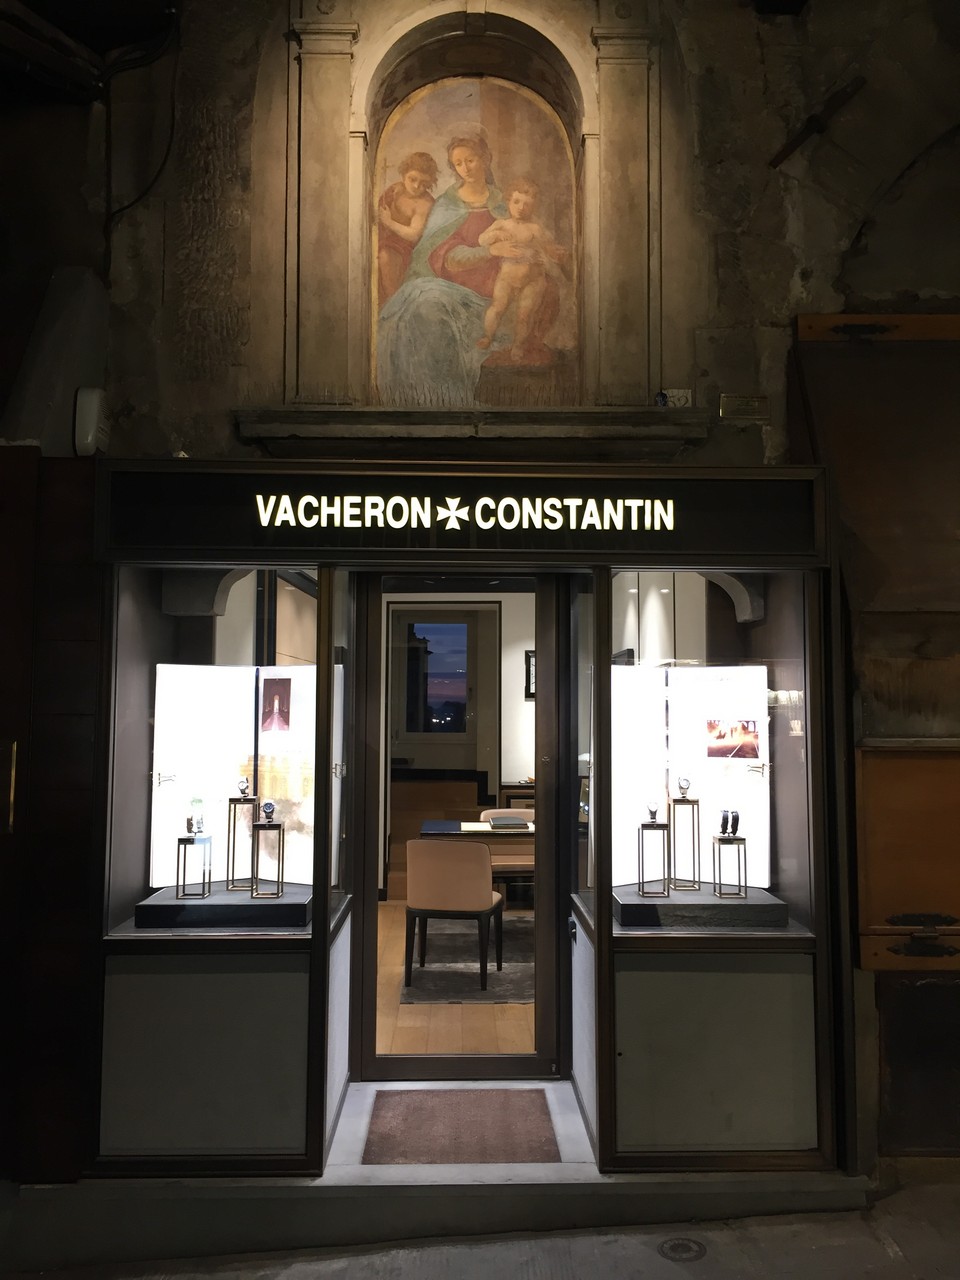 Vacheron Constantin in mostra a Firenze da Cassetti sul Ponte Vecchio